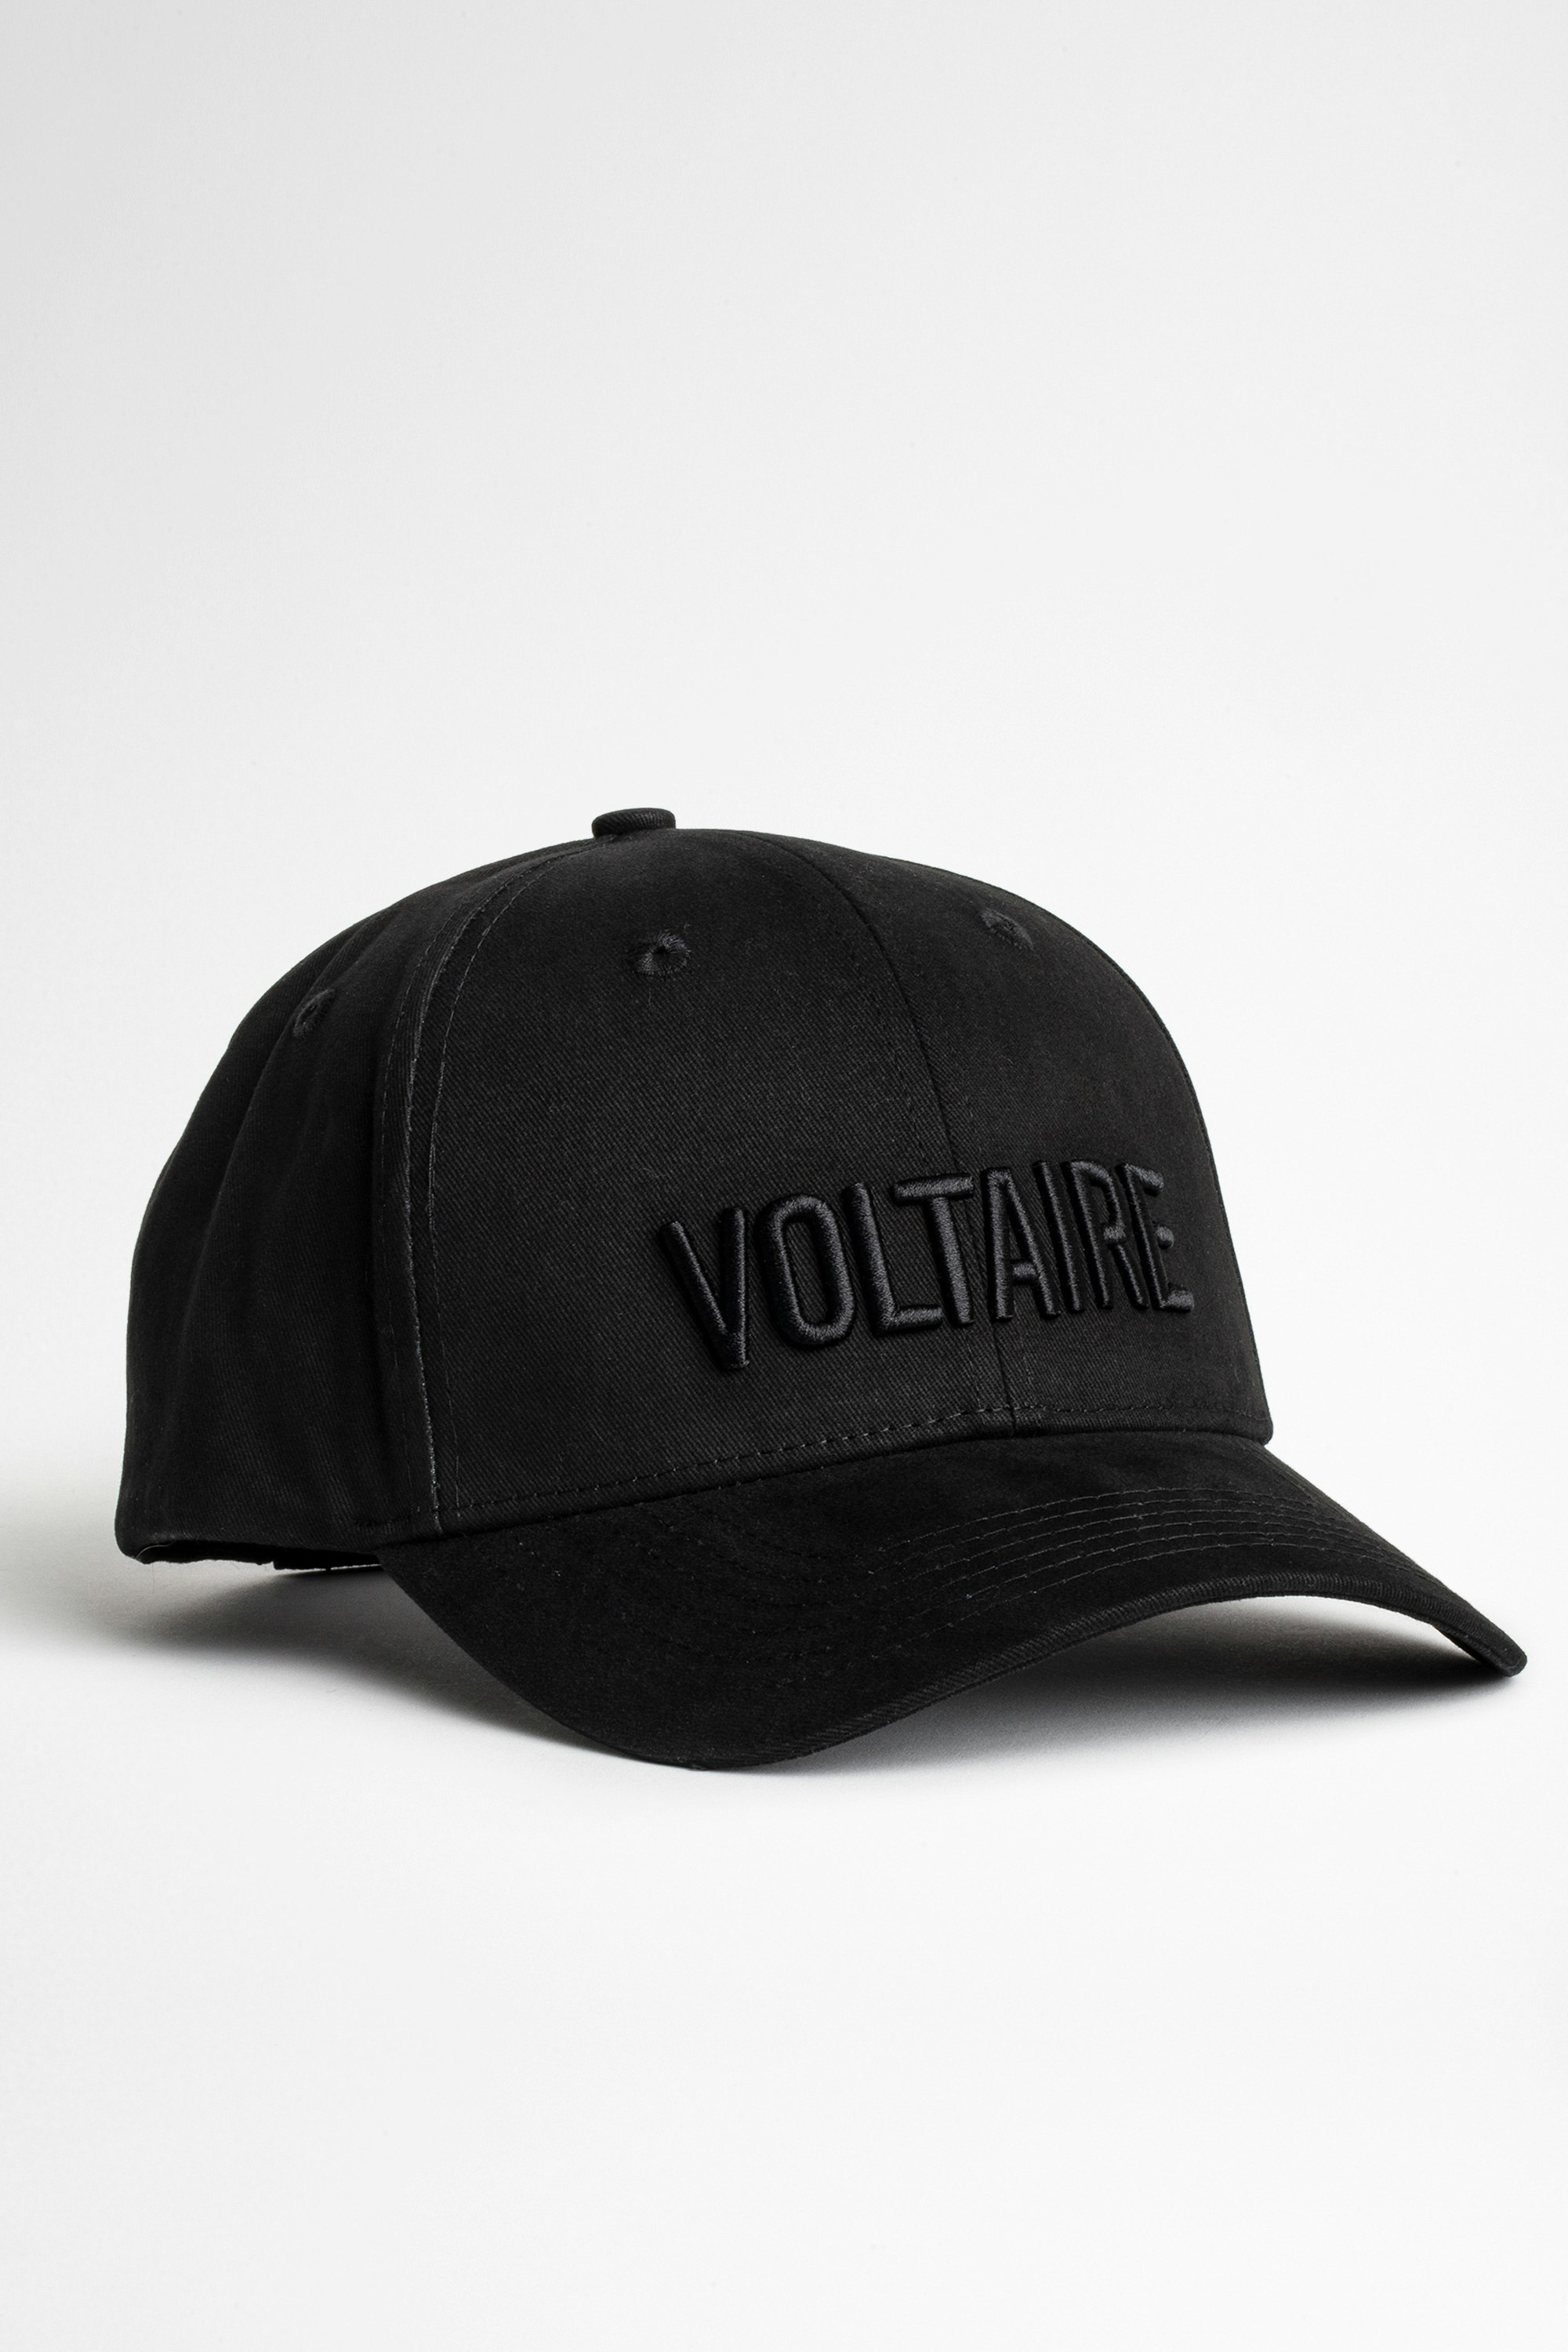 Klelia Voltaire Cap Men’s black cap.